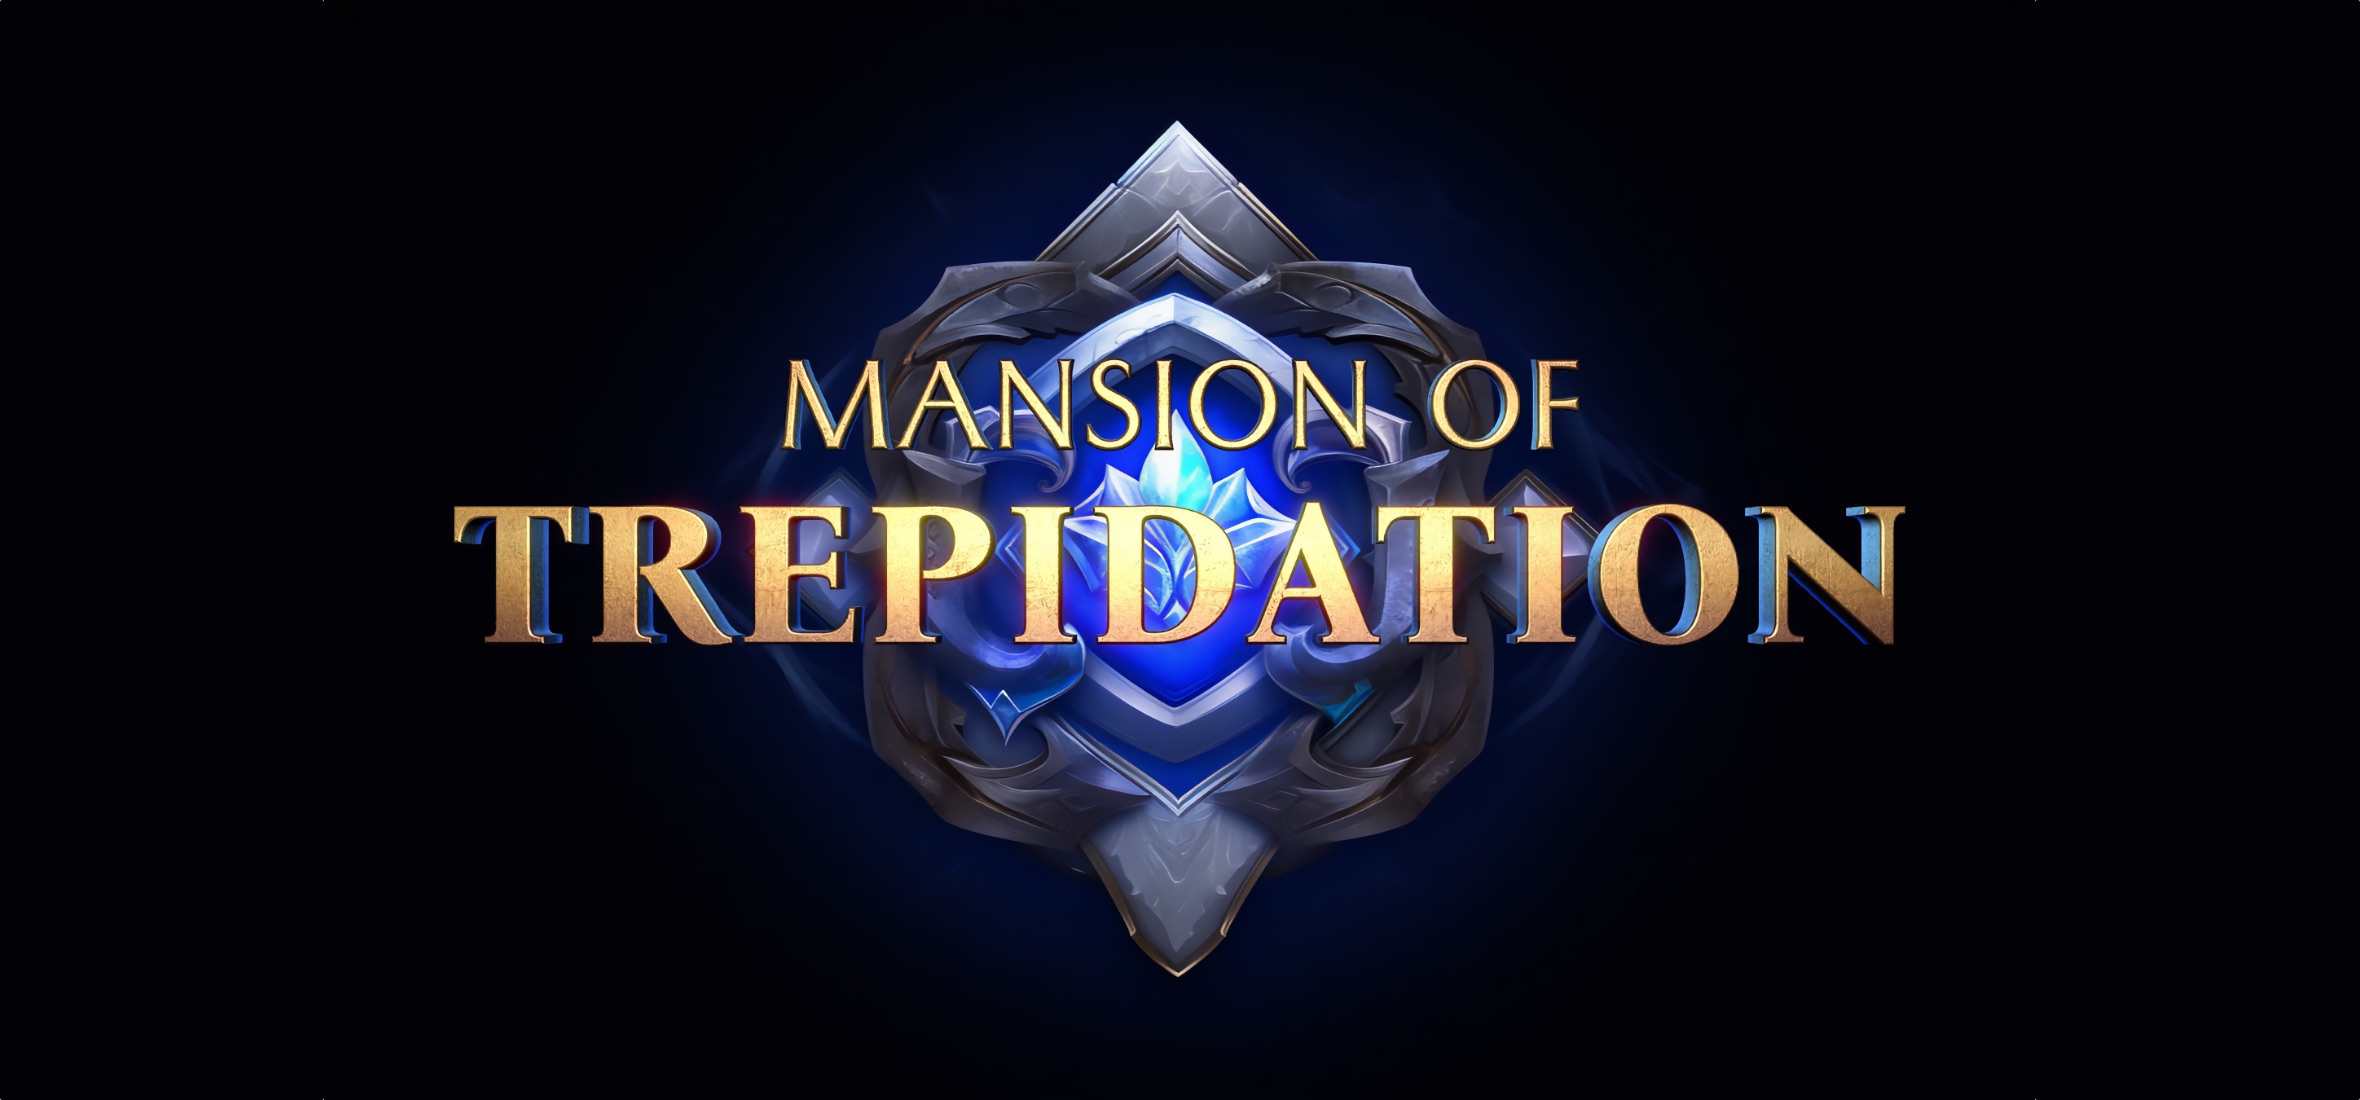 Mansion of Trepidation